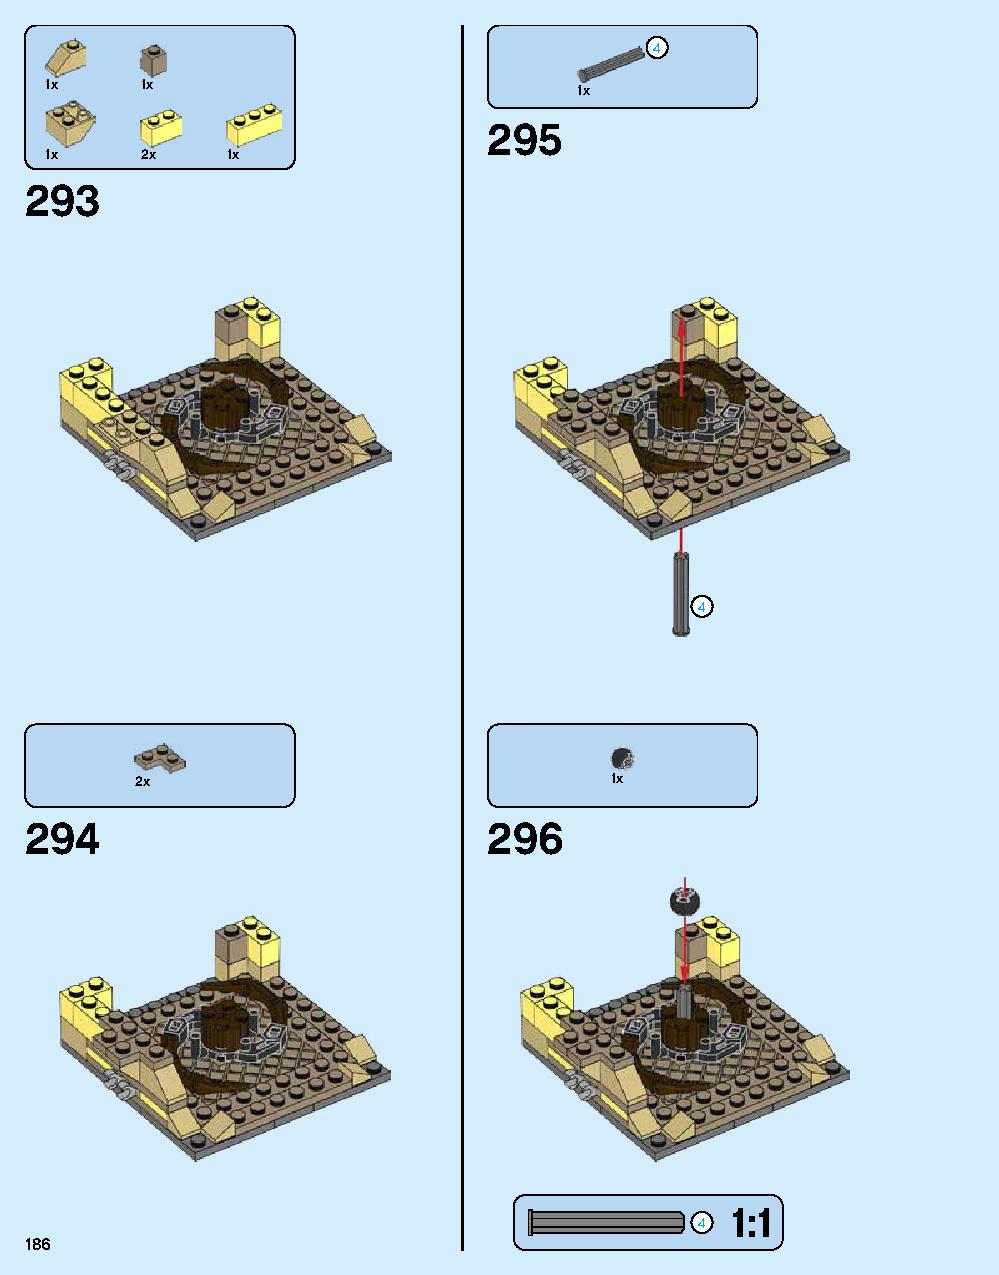 ニンジャゴー シティ 70620 レゴの商品情報 レゴの説明書・組立方法 186 page